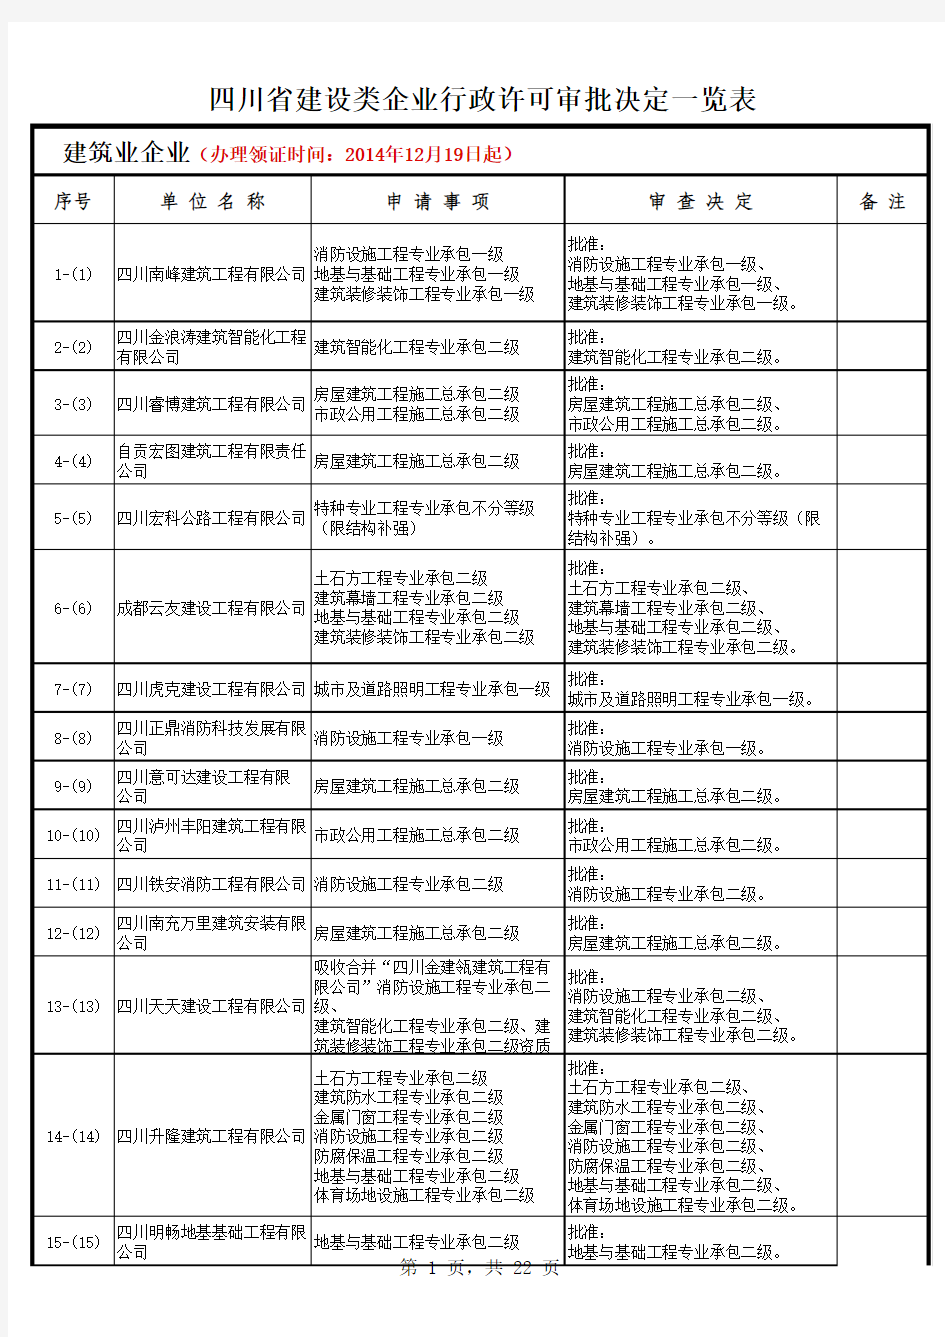 四川省建设类企业行政许可审批决定一览表